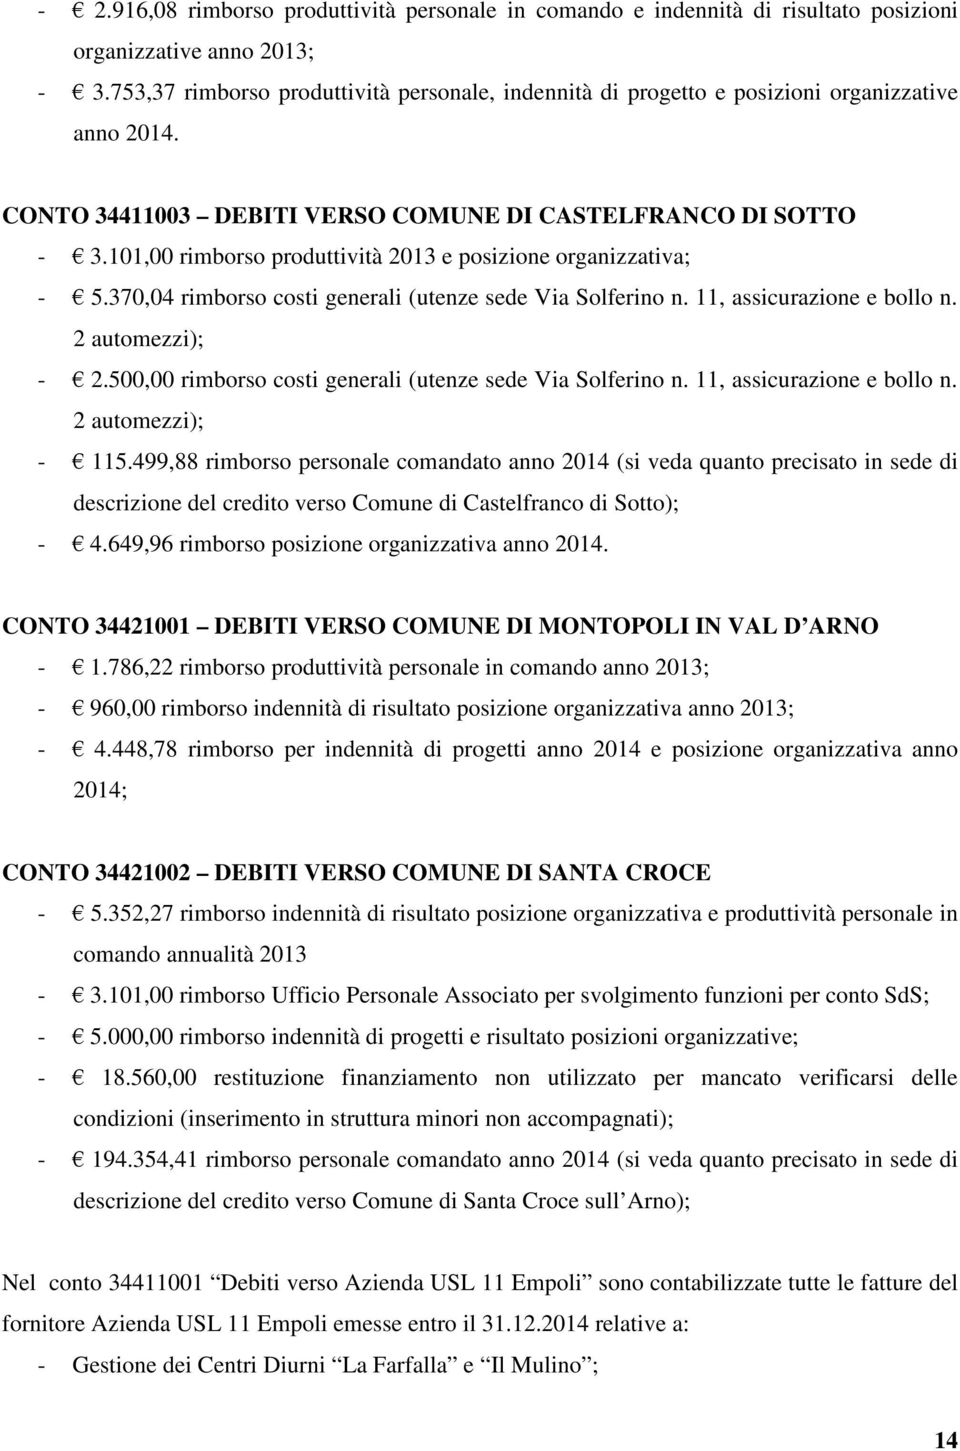 101,00 rimborso produttività 2013 e posizione organizzativa; - 5.370,04 rimborso costi generali (utenze sede Via Solferino n. 11, assicurazione e bollo n. 2 automezzi); - 2.